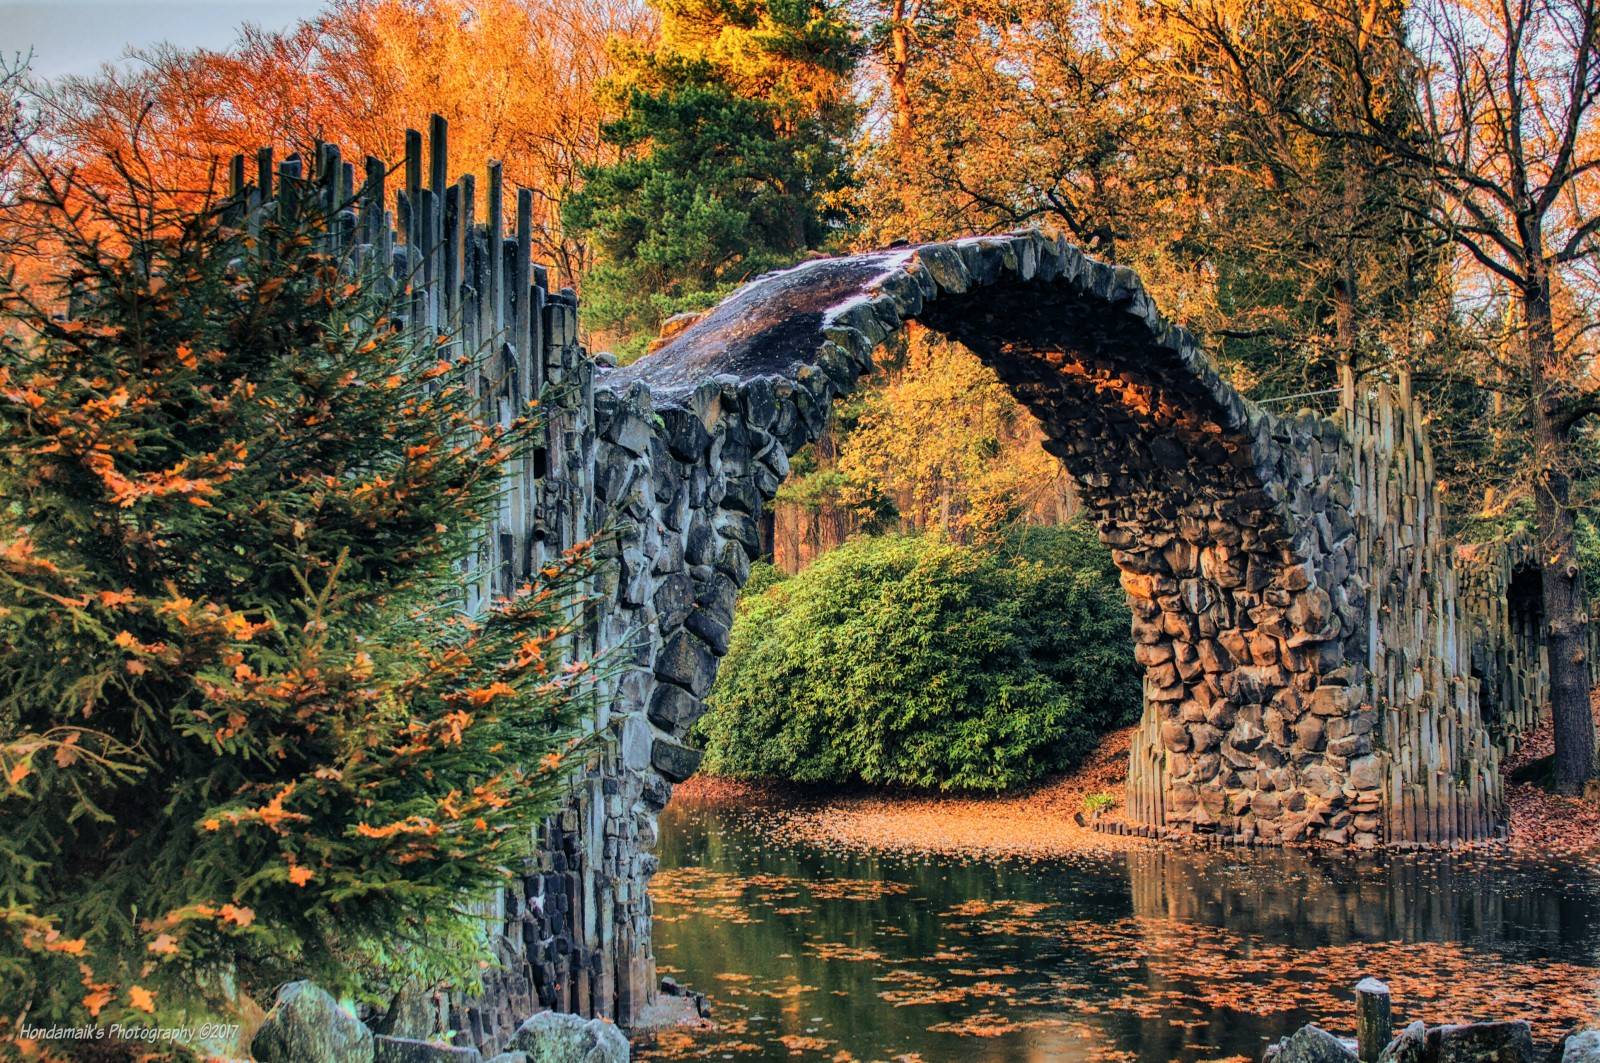 Дьявольский мост или мост ракотцбрюке в германии